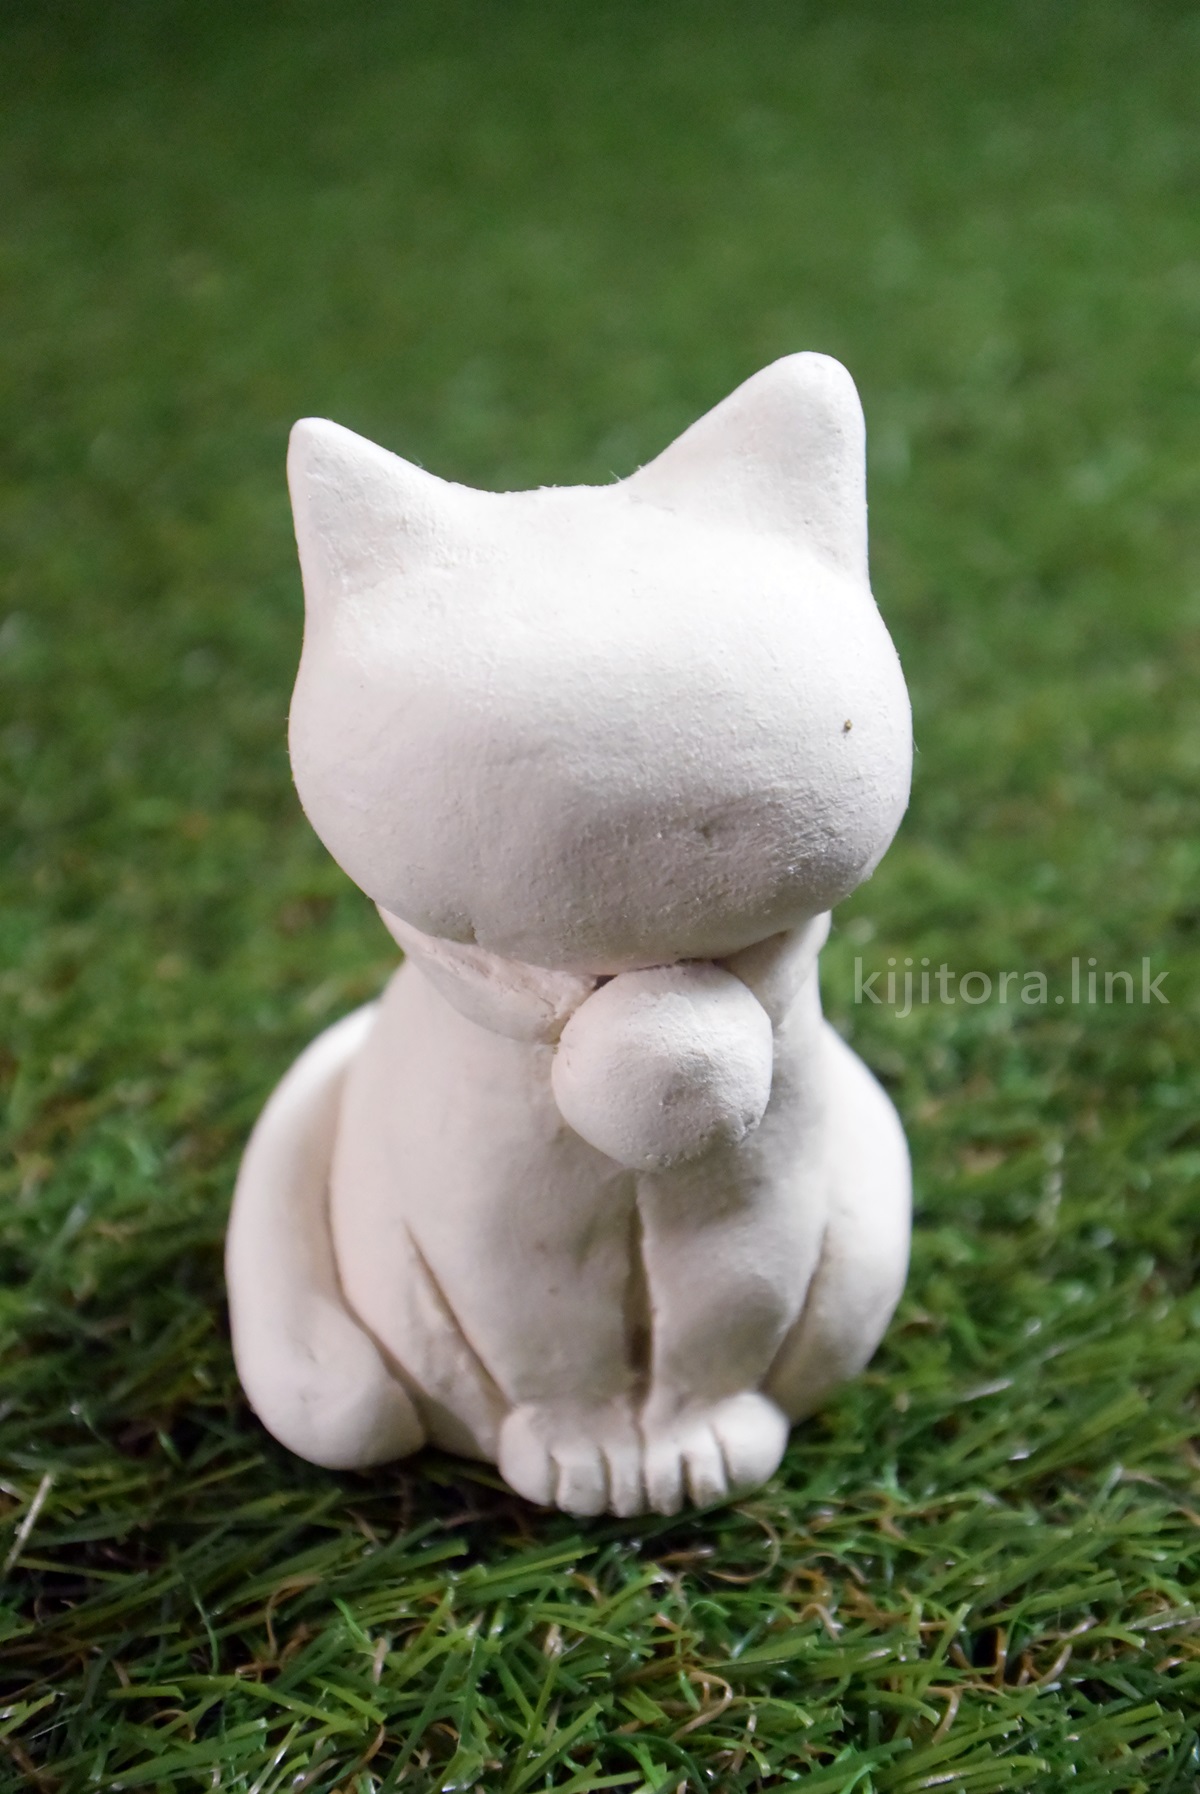 意外に簡単 ダイソーの石粉粘土でお座り猫を作ってみた キジとら